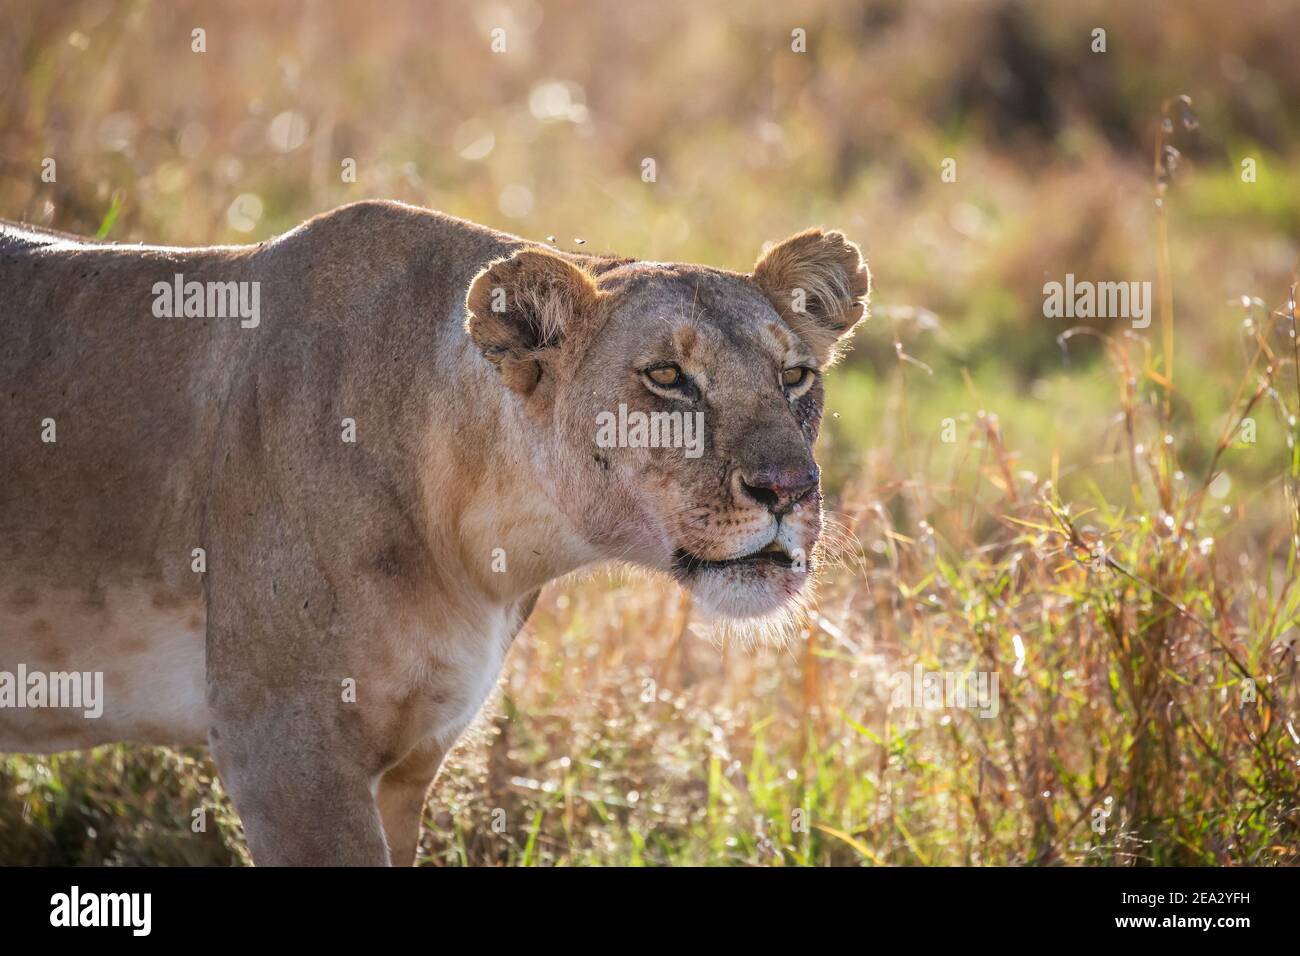 Close up of lioness staring at prey, Masai Mara, Kenya Stock Photo